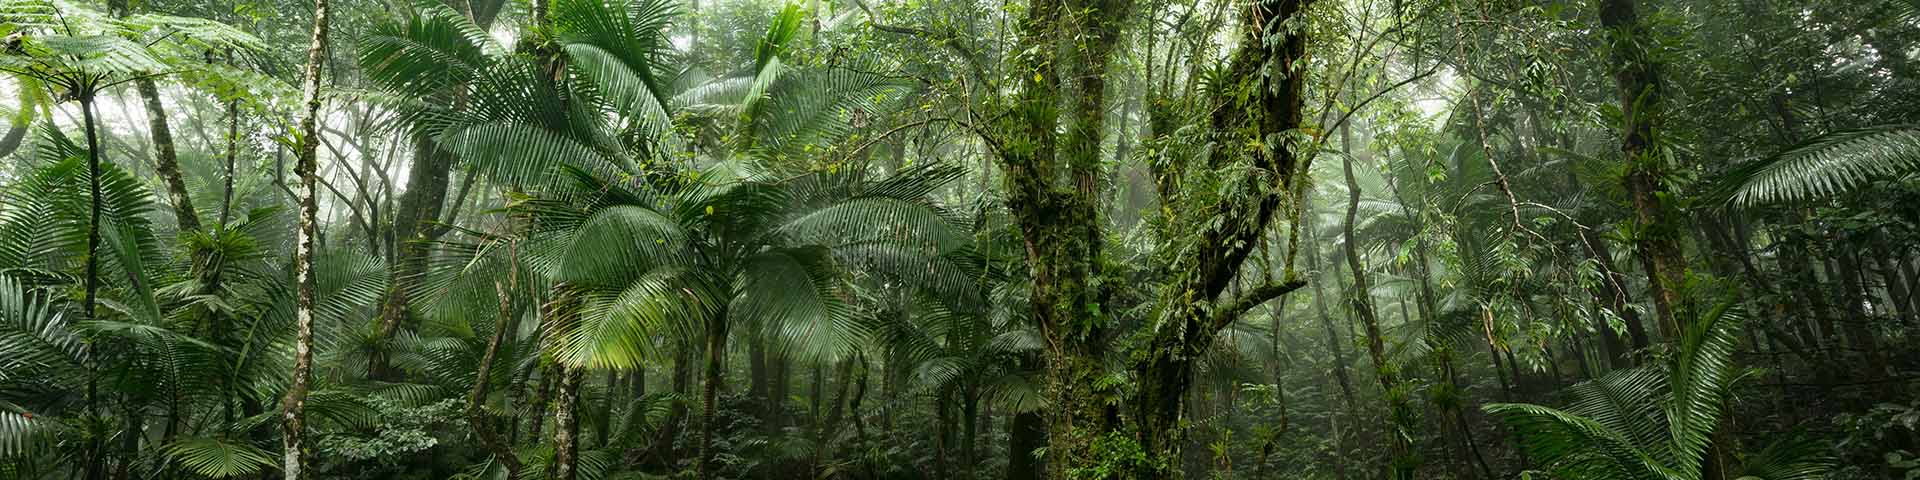 Scène de jungle verte de la forêt tropicale El Yunque sur l'île caribéenne de Porto Rico.